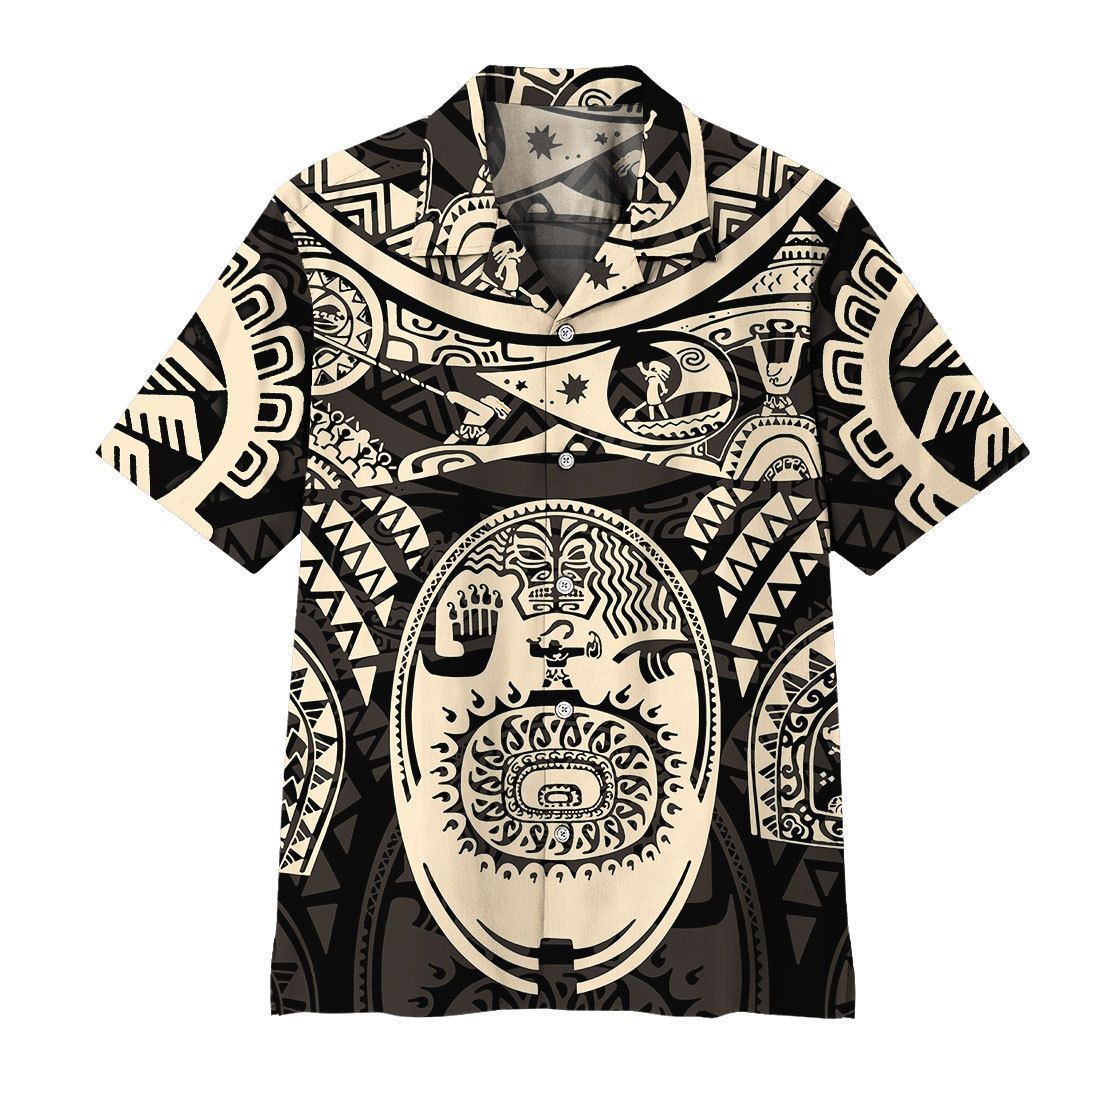 Gearhuman 3D A Demigod Of Hawaii Tattoo Hawaii Shirt ZK0207213 Short Sleeve Shirt Short Sleeve Shirt S 